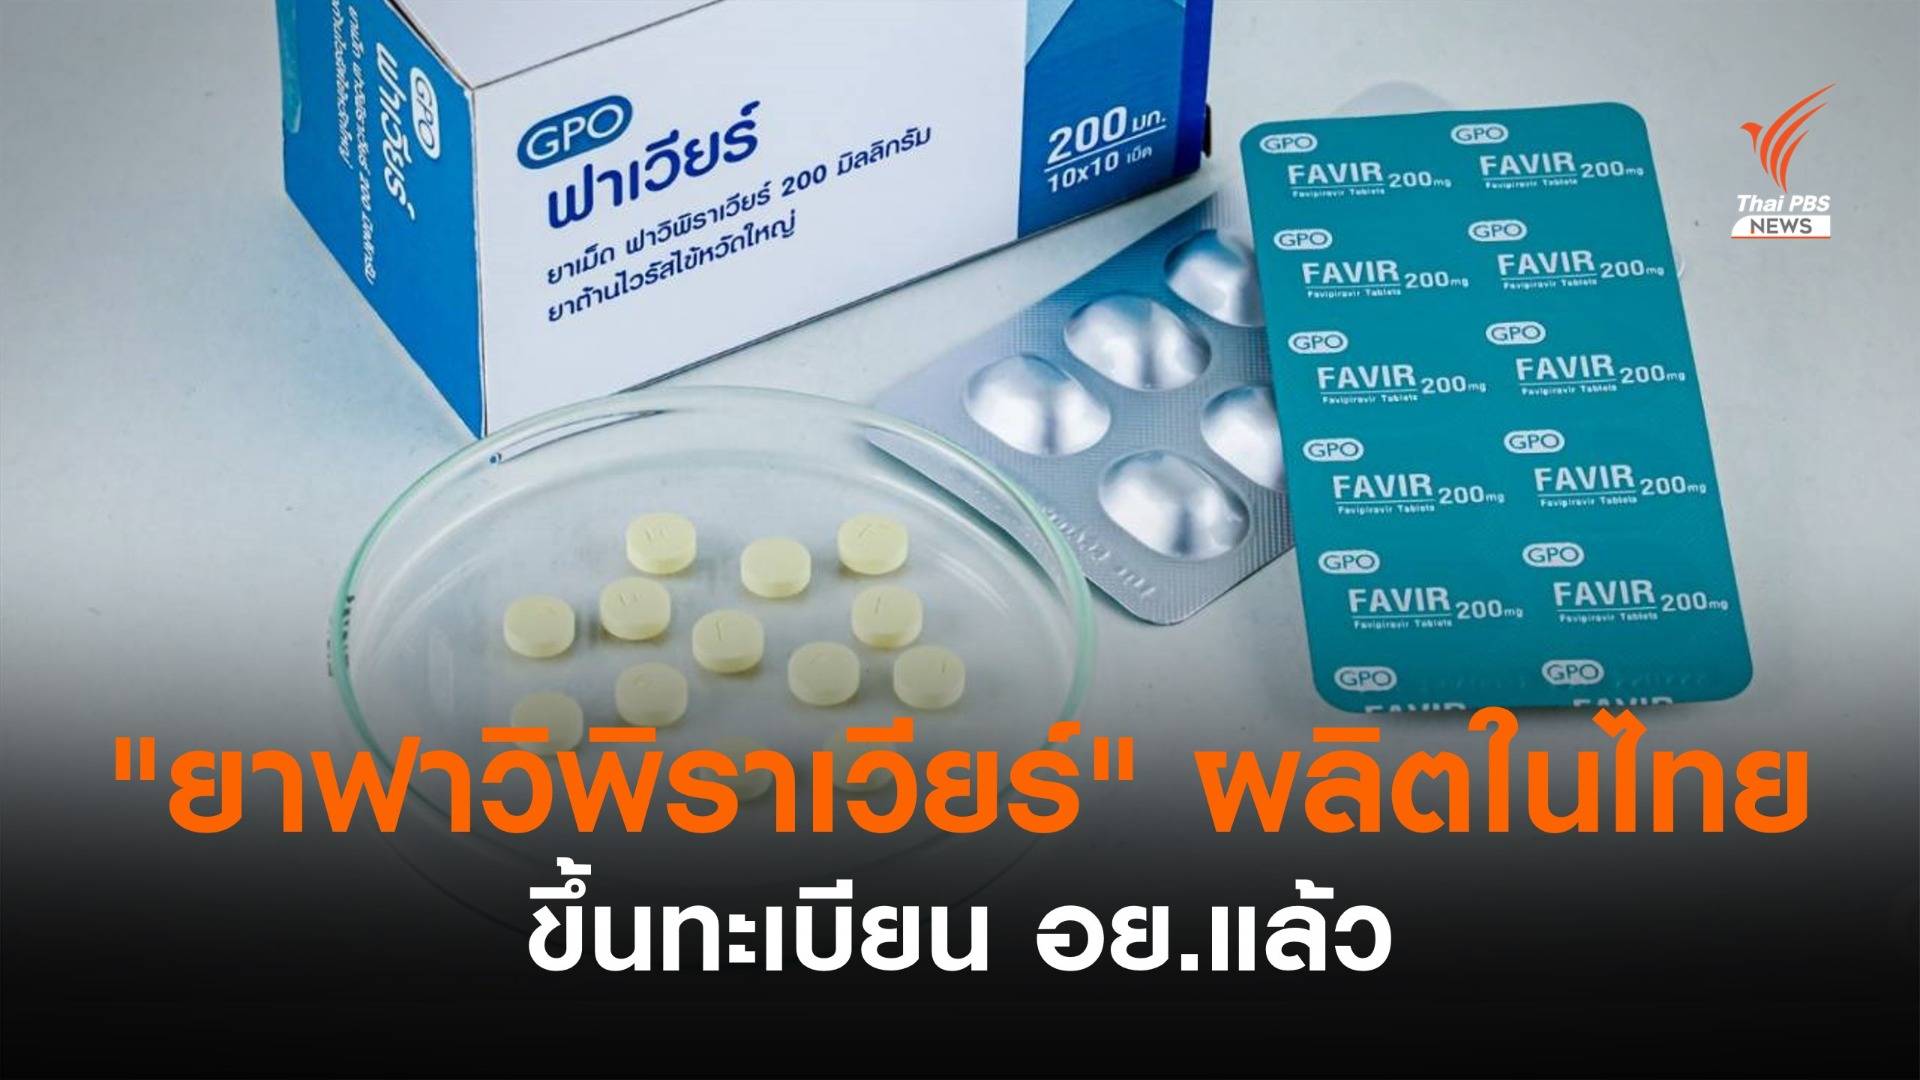 "ยาฟาวิพิราเวียร์" ผลิตในไทย ขึ้นทะเบียน อย.แล้ว จ่อส่งให้ผู้ป่วย ส.ค.นี้